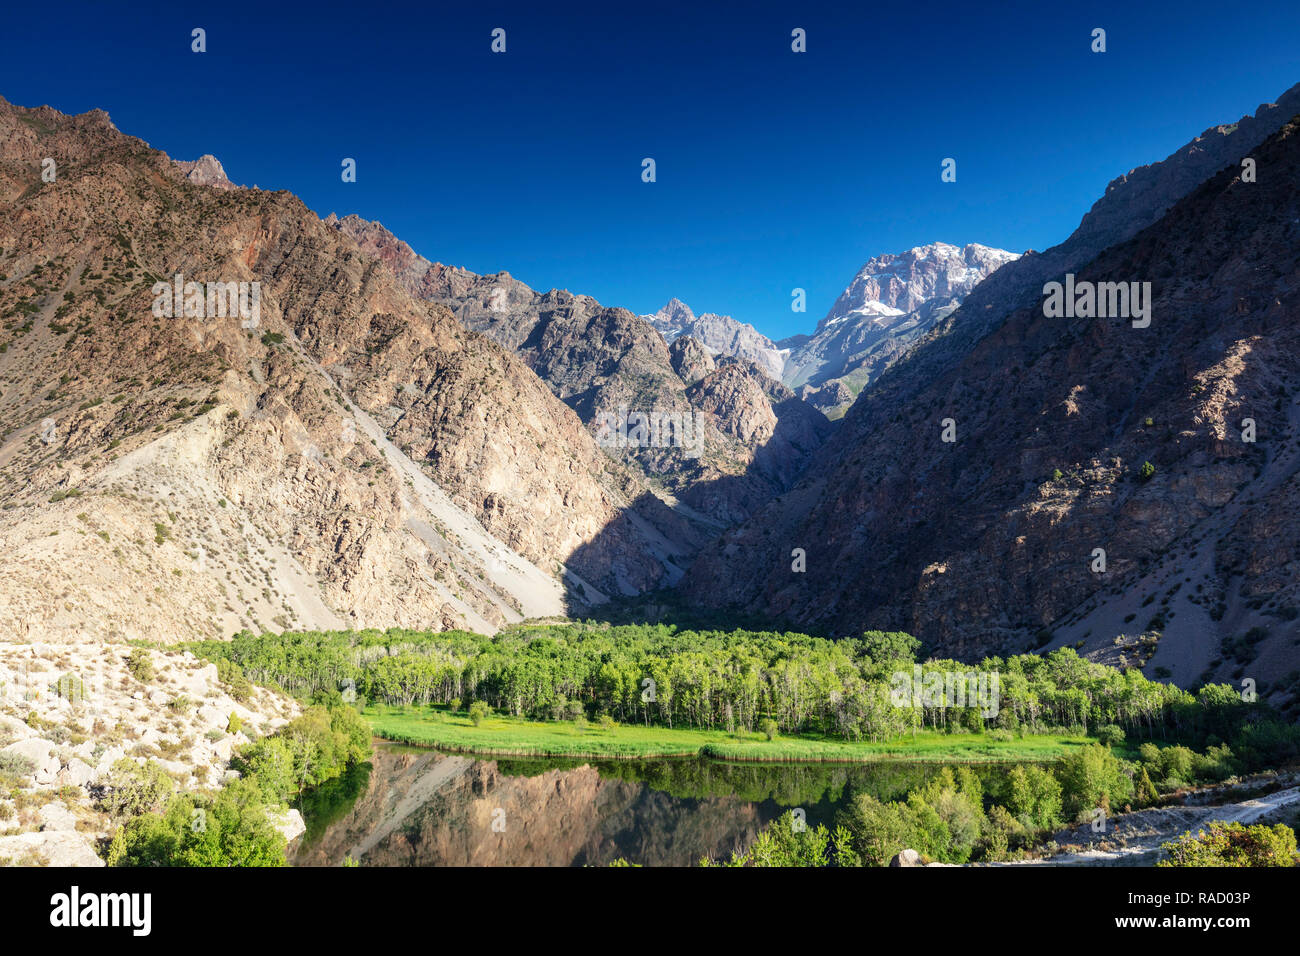 Oasis de árboles por debajo de las montañas, el lago, las montañas de ventilador Iskanderkul, Tayikistán, en Asia Central, Asia Foto de stock